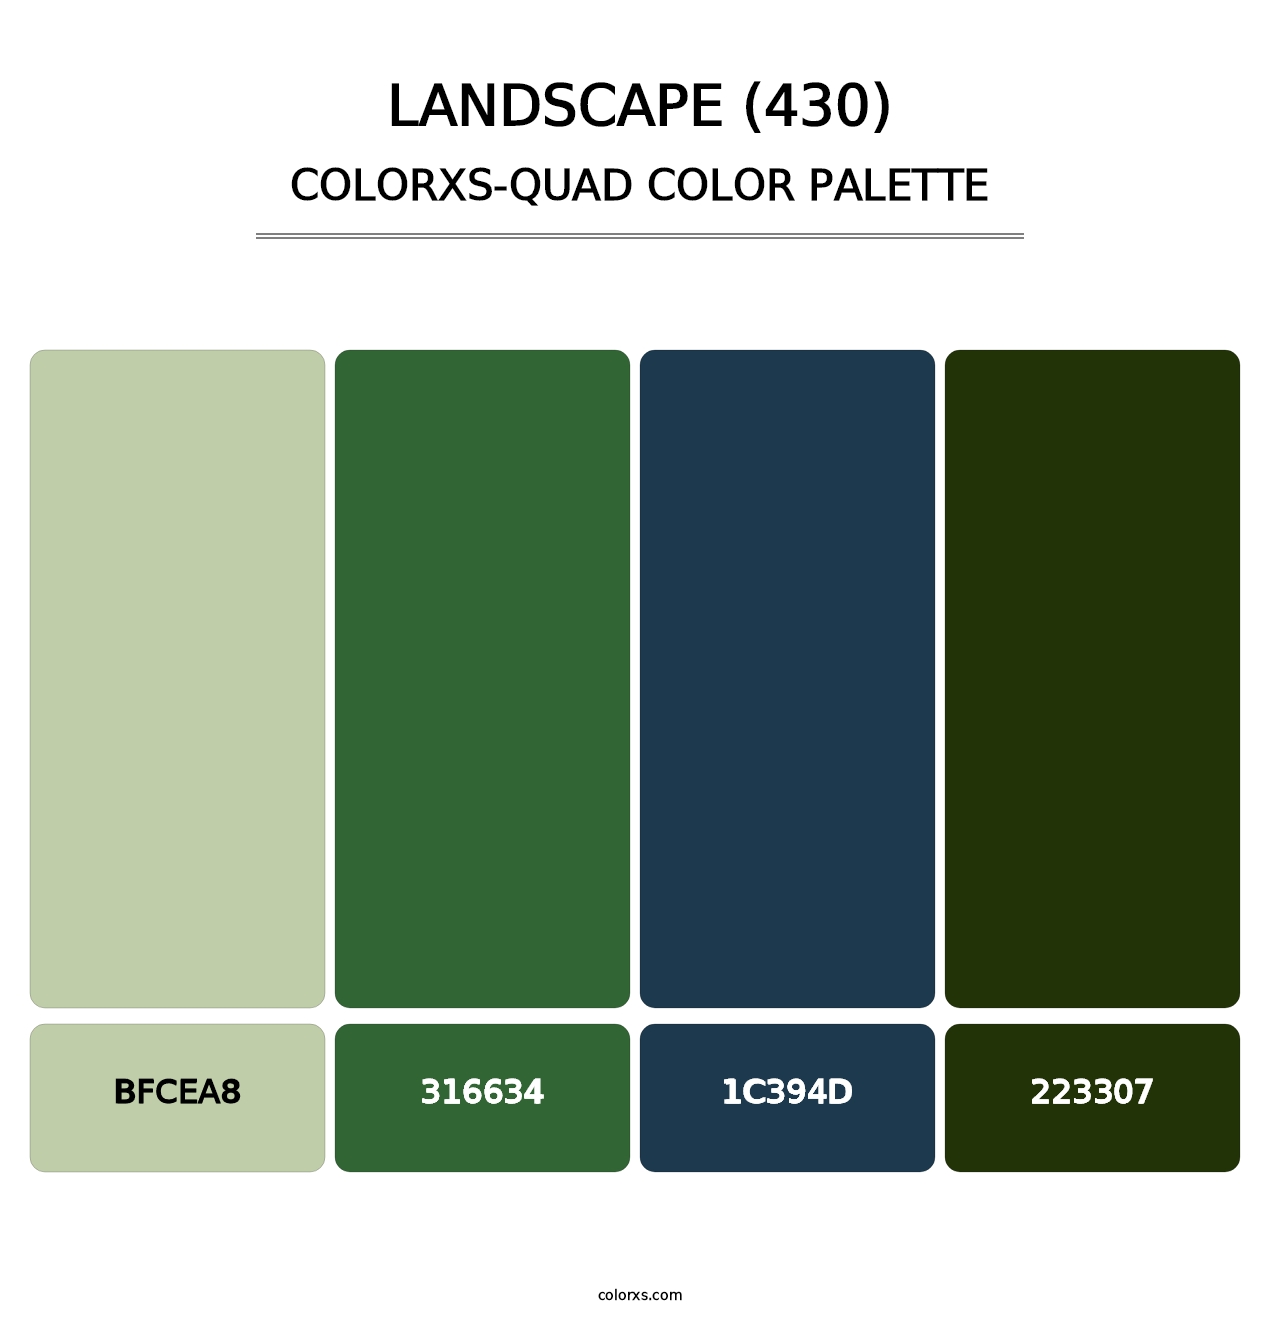 Landscape (430) - Colorxs Quad Palette